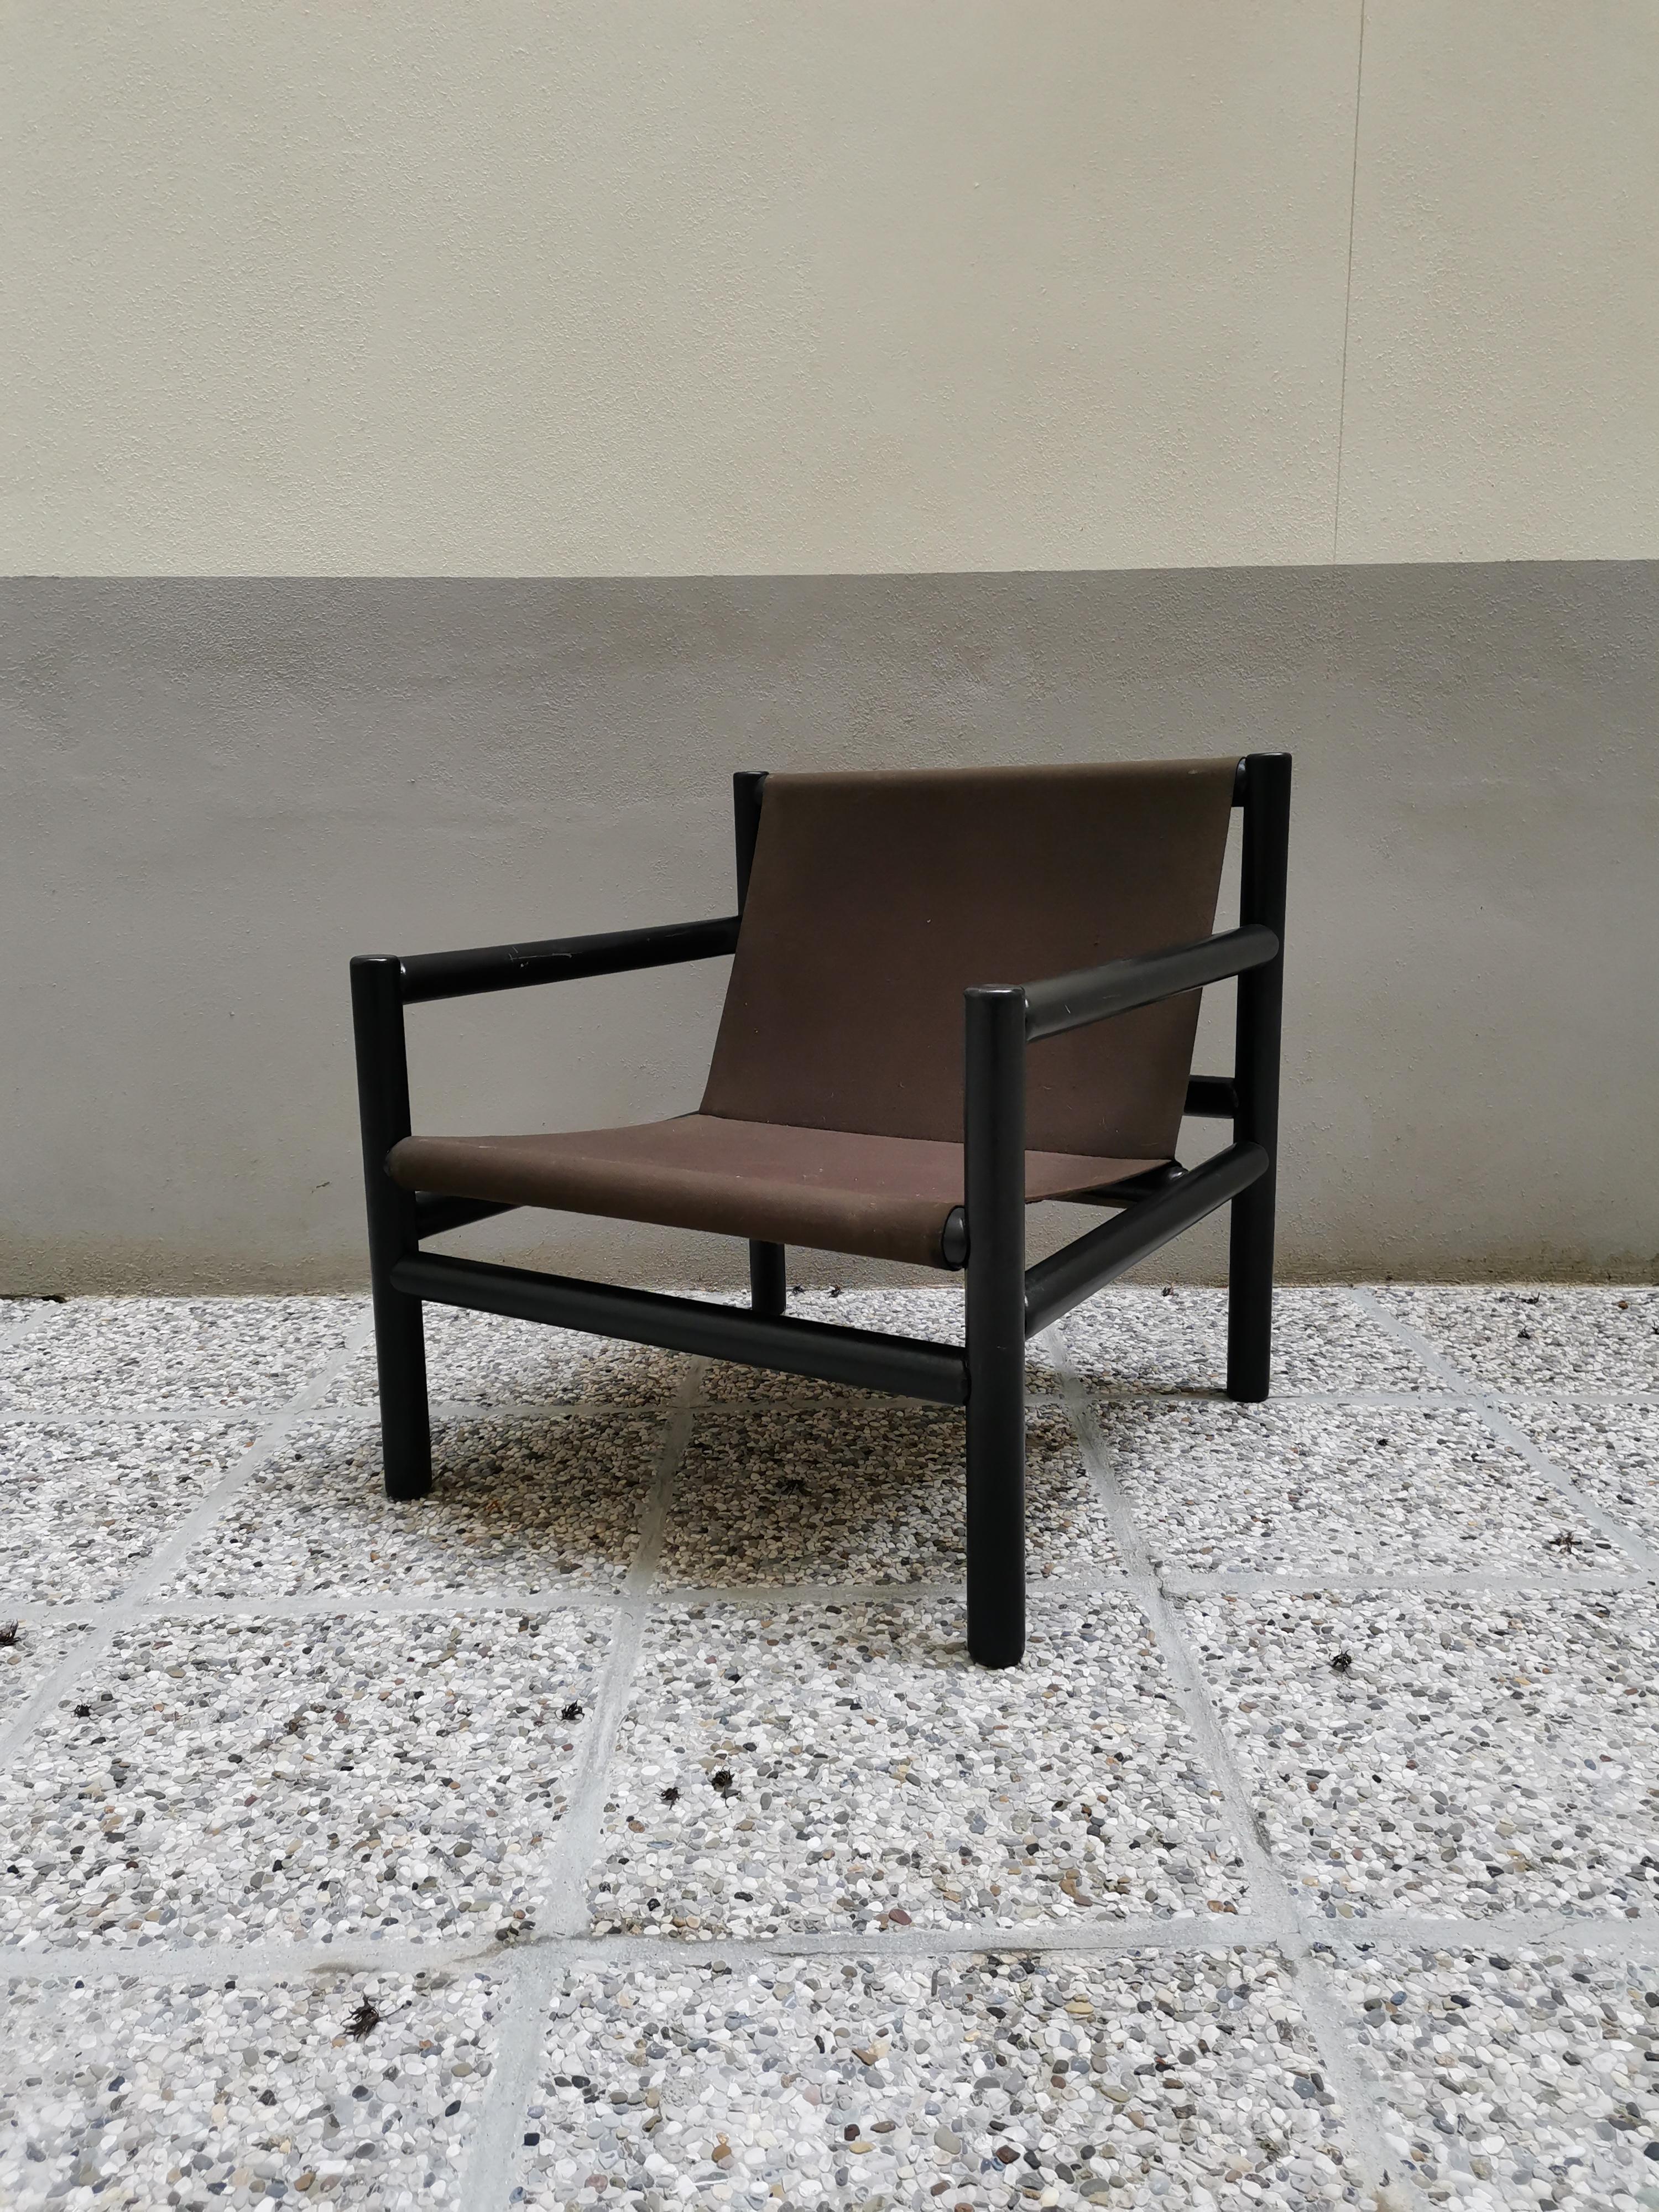 Fauteuil produit par Stol Kamnik, designer Branko Uršič (rare), Slovénie. Âge : années 1960. Il est composé d'un cadre en bois peint en noir avec finition brillante et d'un textile brun. La chaise a été conçue par le designer slovène Branko Ursic en